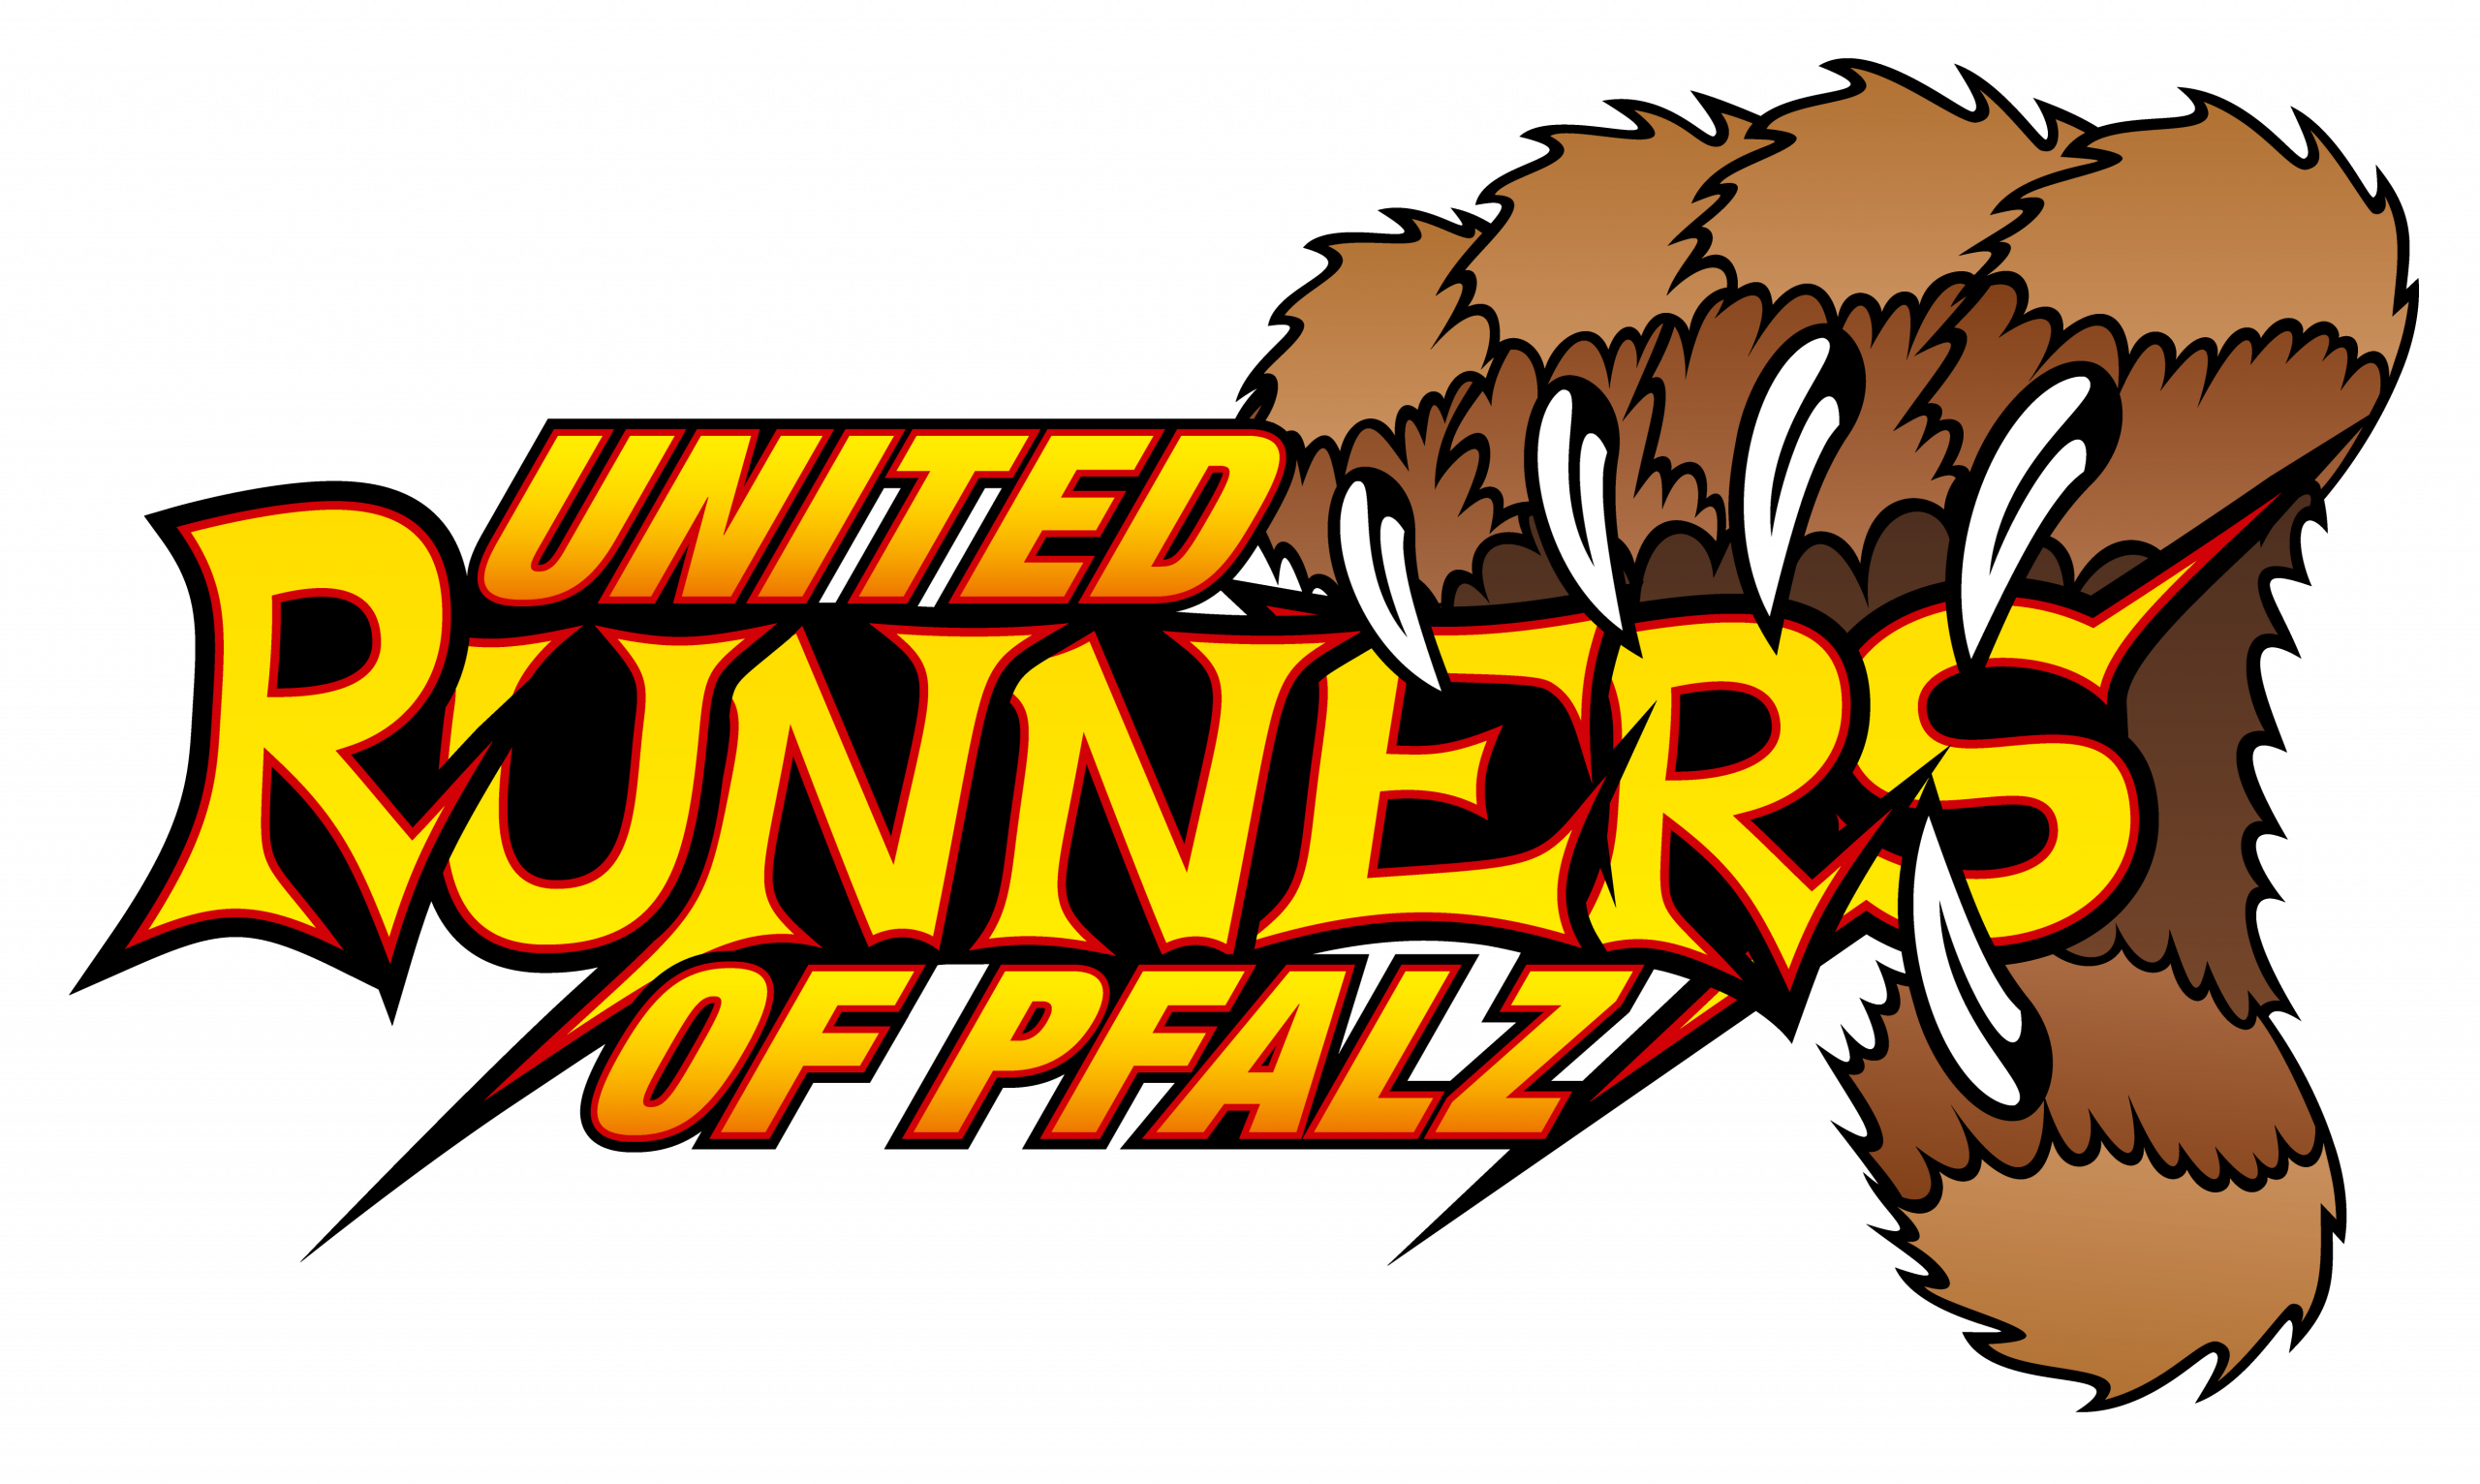 https://united-runners-of-pfalz.de/wp-content/uploads/2020/10/urop_logo_3c_5000px_NEU.png